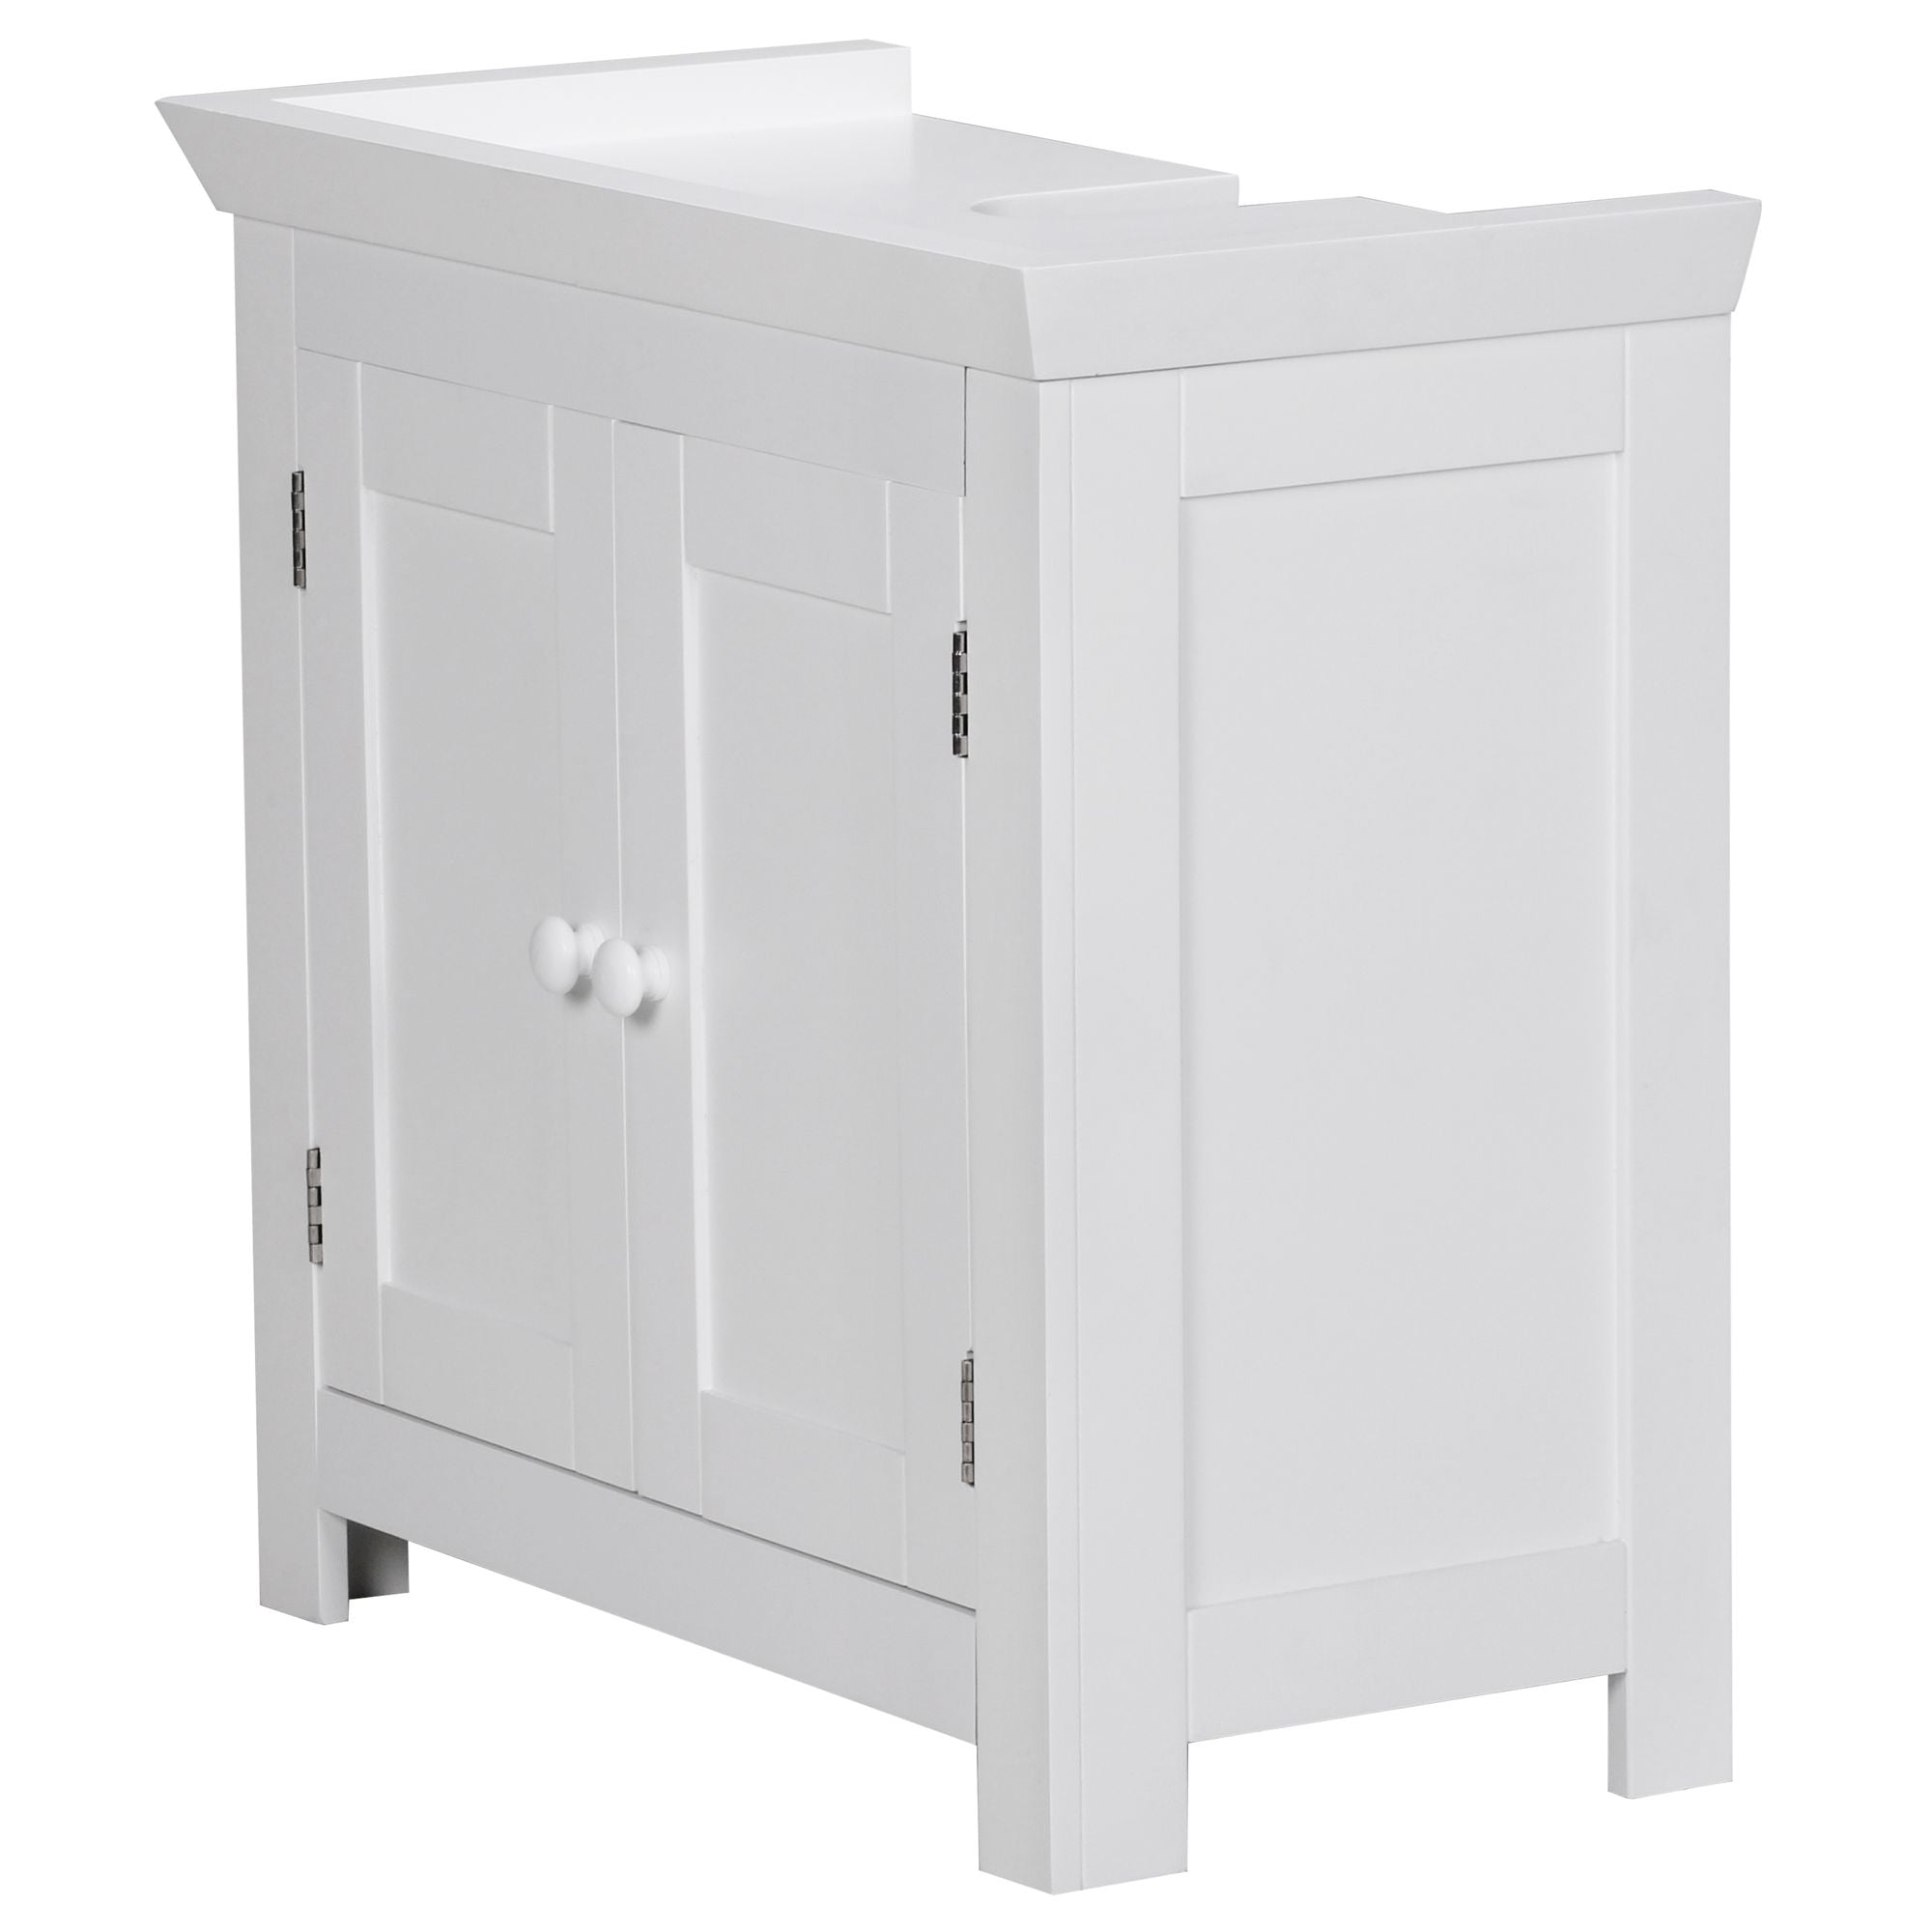 Nancy's Wilson Washbasin cabinet - Bathroom cabinet - Bathroom furniture - Bathroom furniture - Laundry furniture - Storage cabinet - White